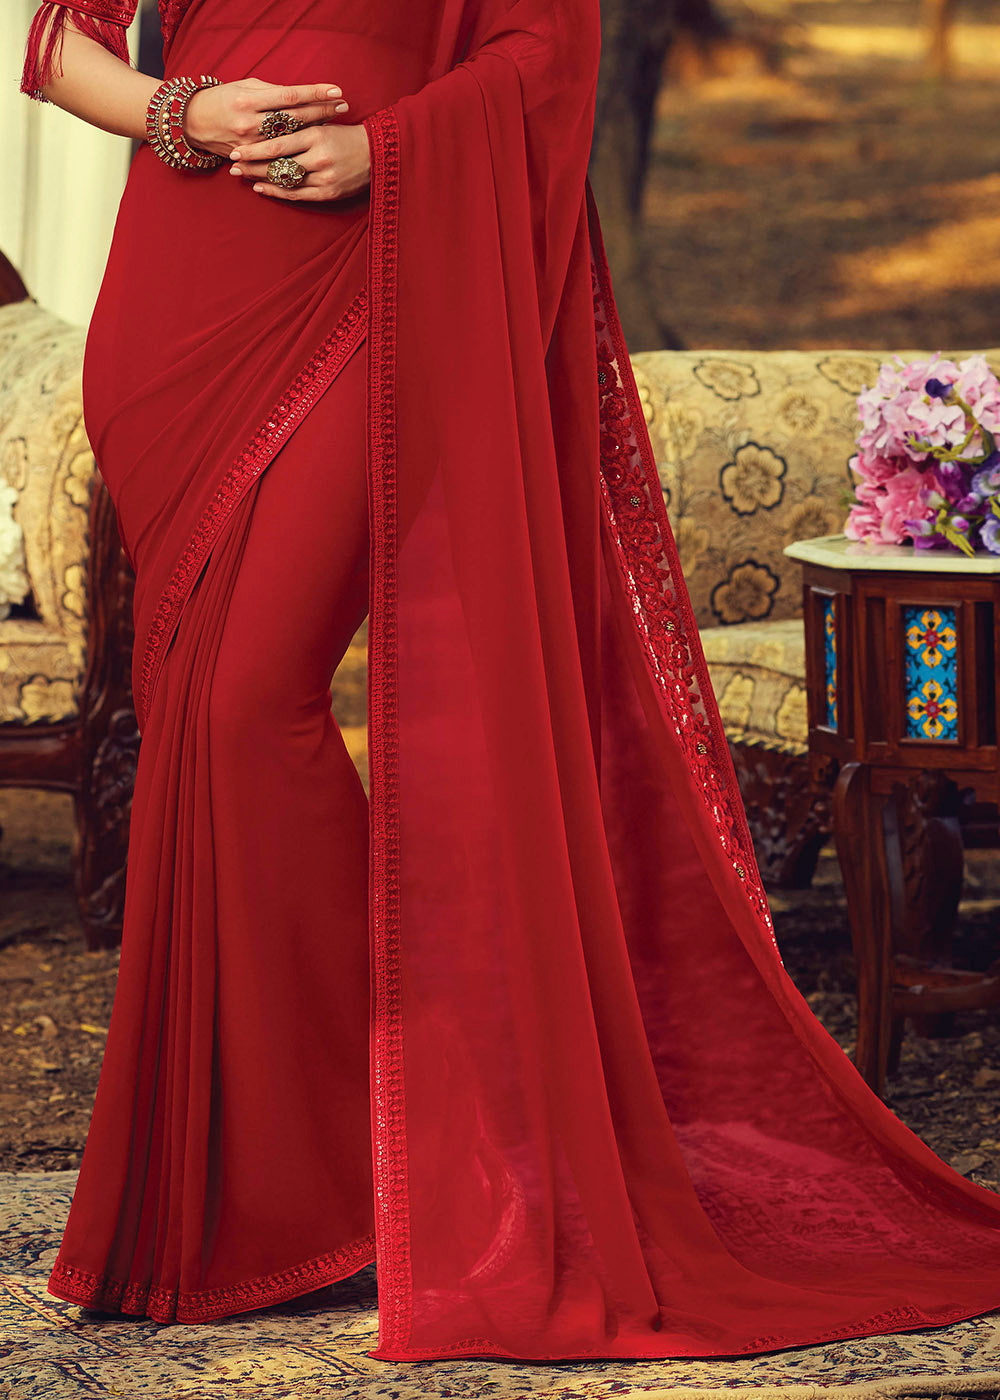 Buy MySilkLove Crail Red Embroidered Georgette Designer Saree Online